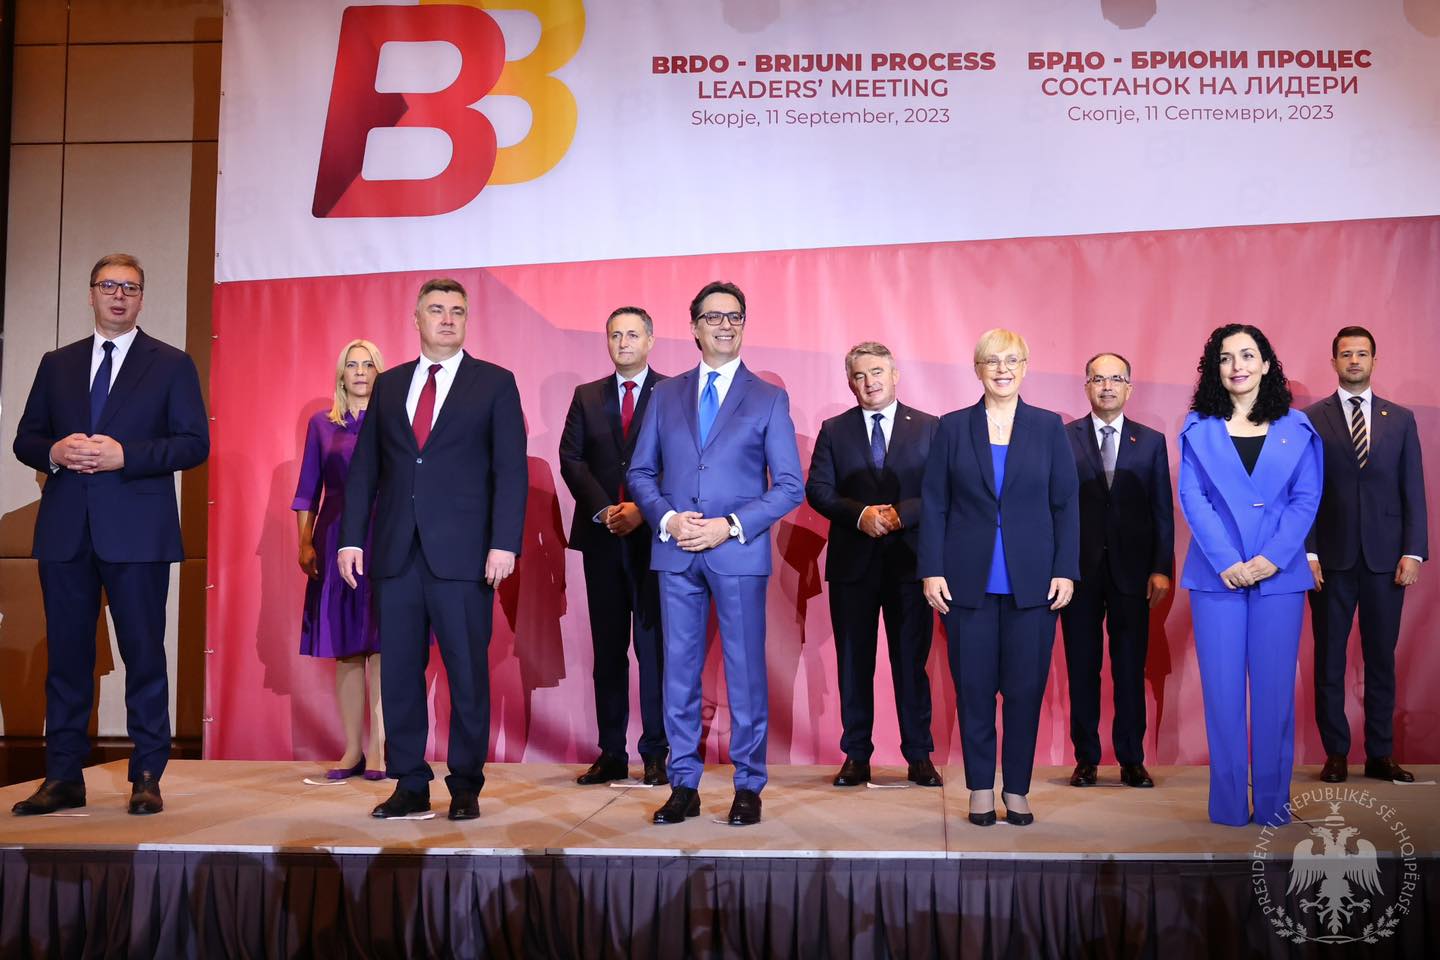 Країни Західних Балкан закріпили курс на вступ у ЄС до 2030 року – результати 12-го саміту Брдо-Бріони